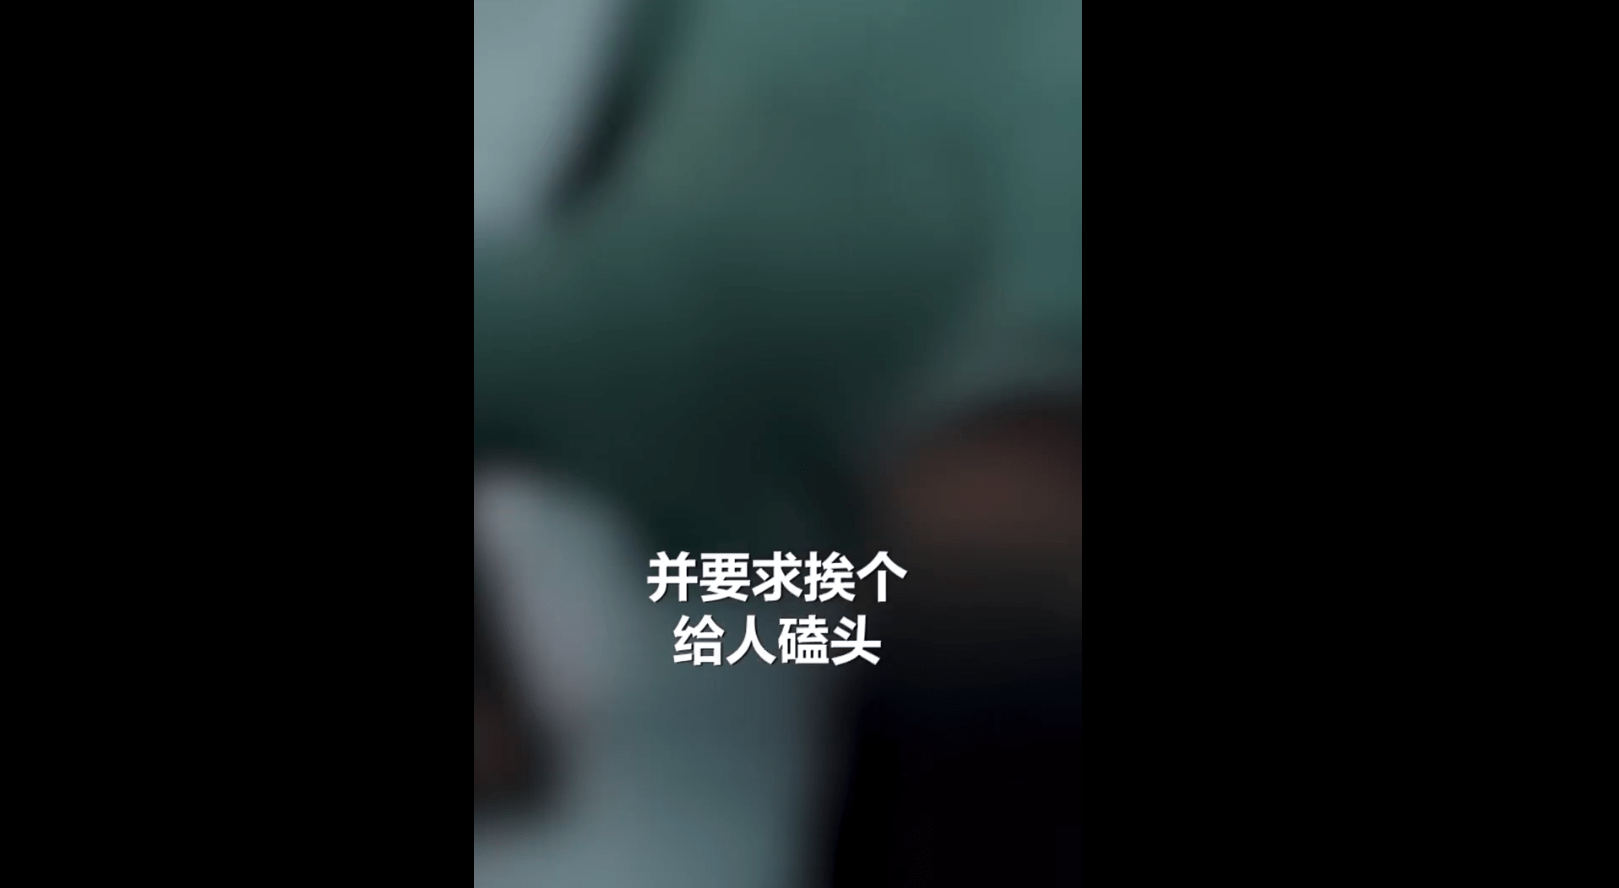 南京高校食堂因搶座一女生被男生扇耳光，男生、女生均遭輿論譴責_聽聞新量度 - MdEditor